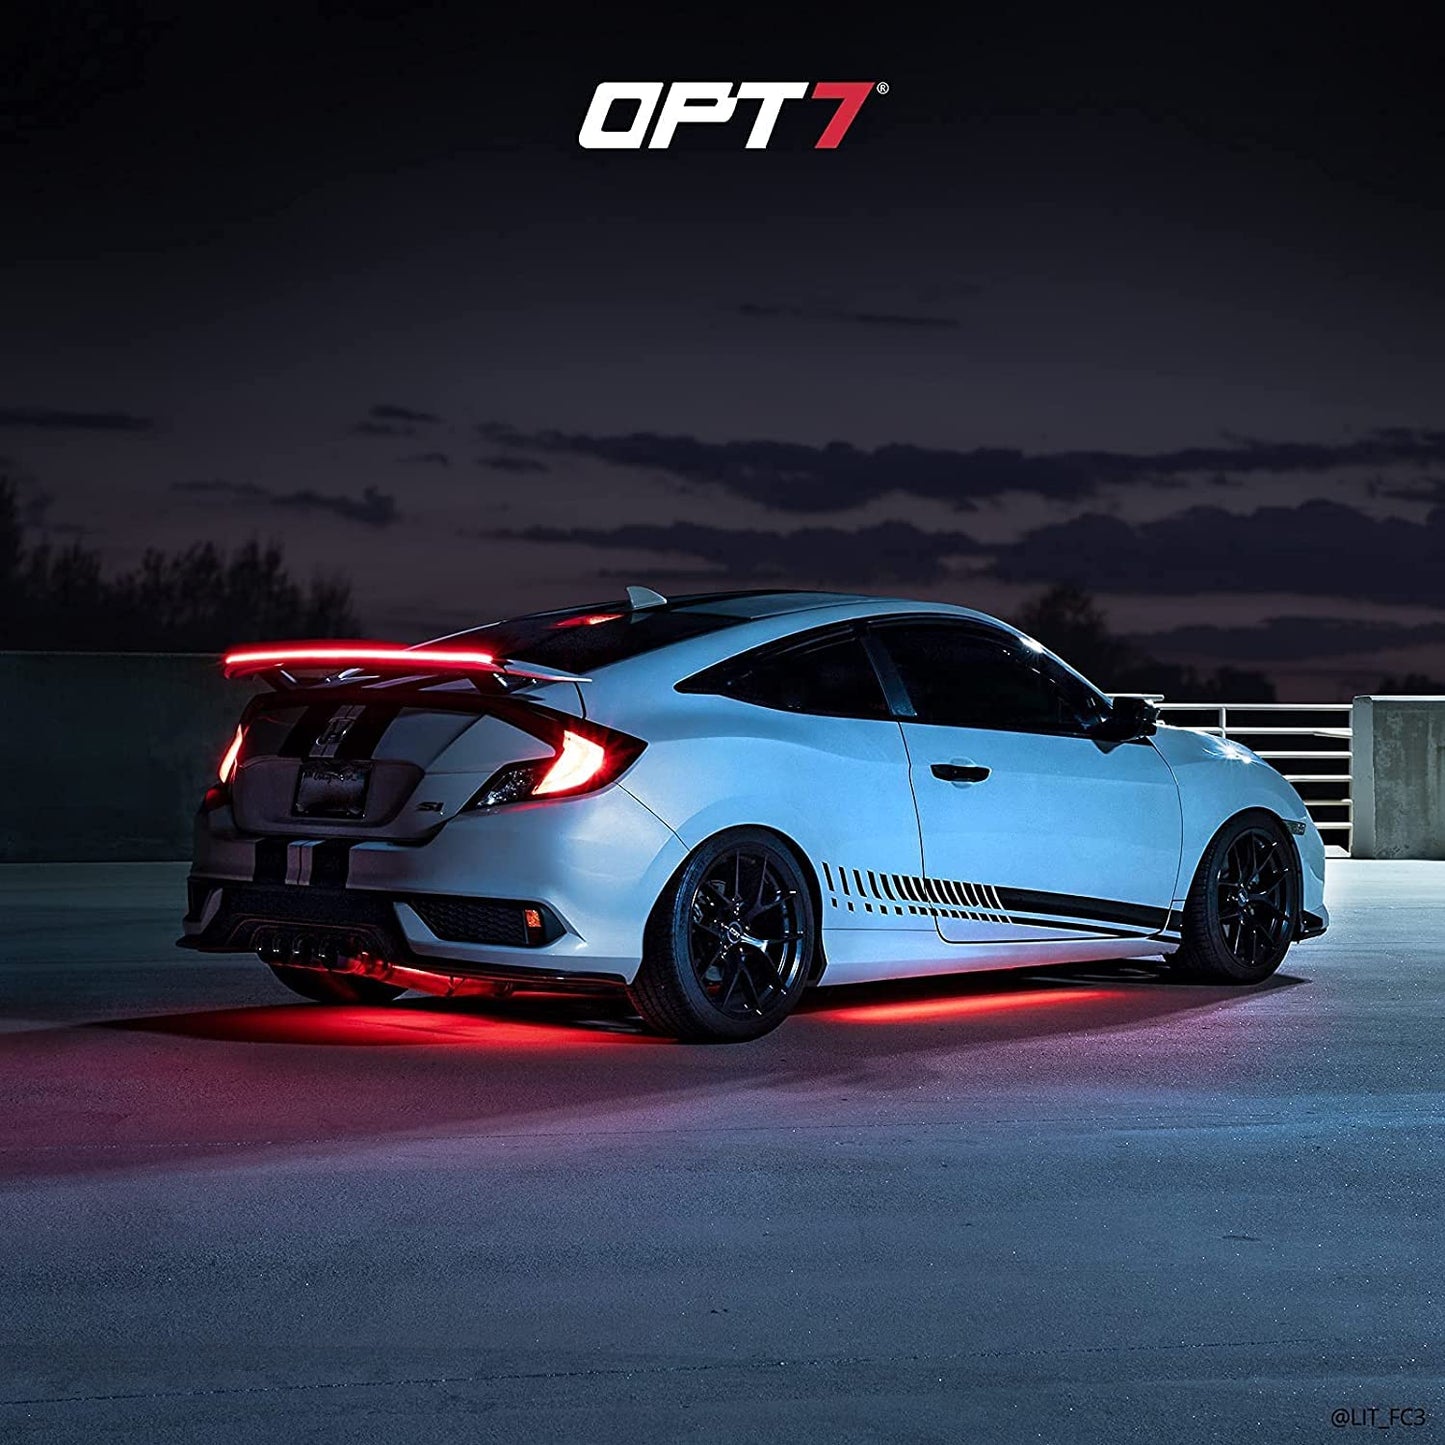 OPT7 Universal LED Spoiler Rear Spoiler Lip Kit (3.9ft) for Car Trunk,